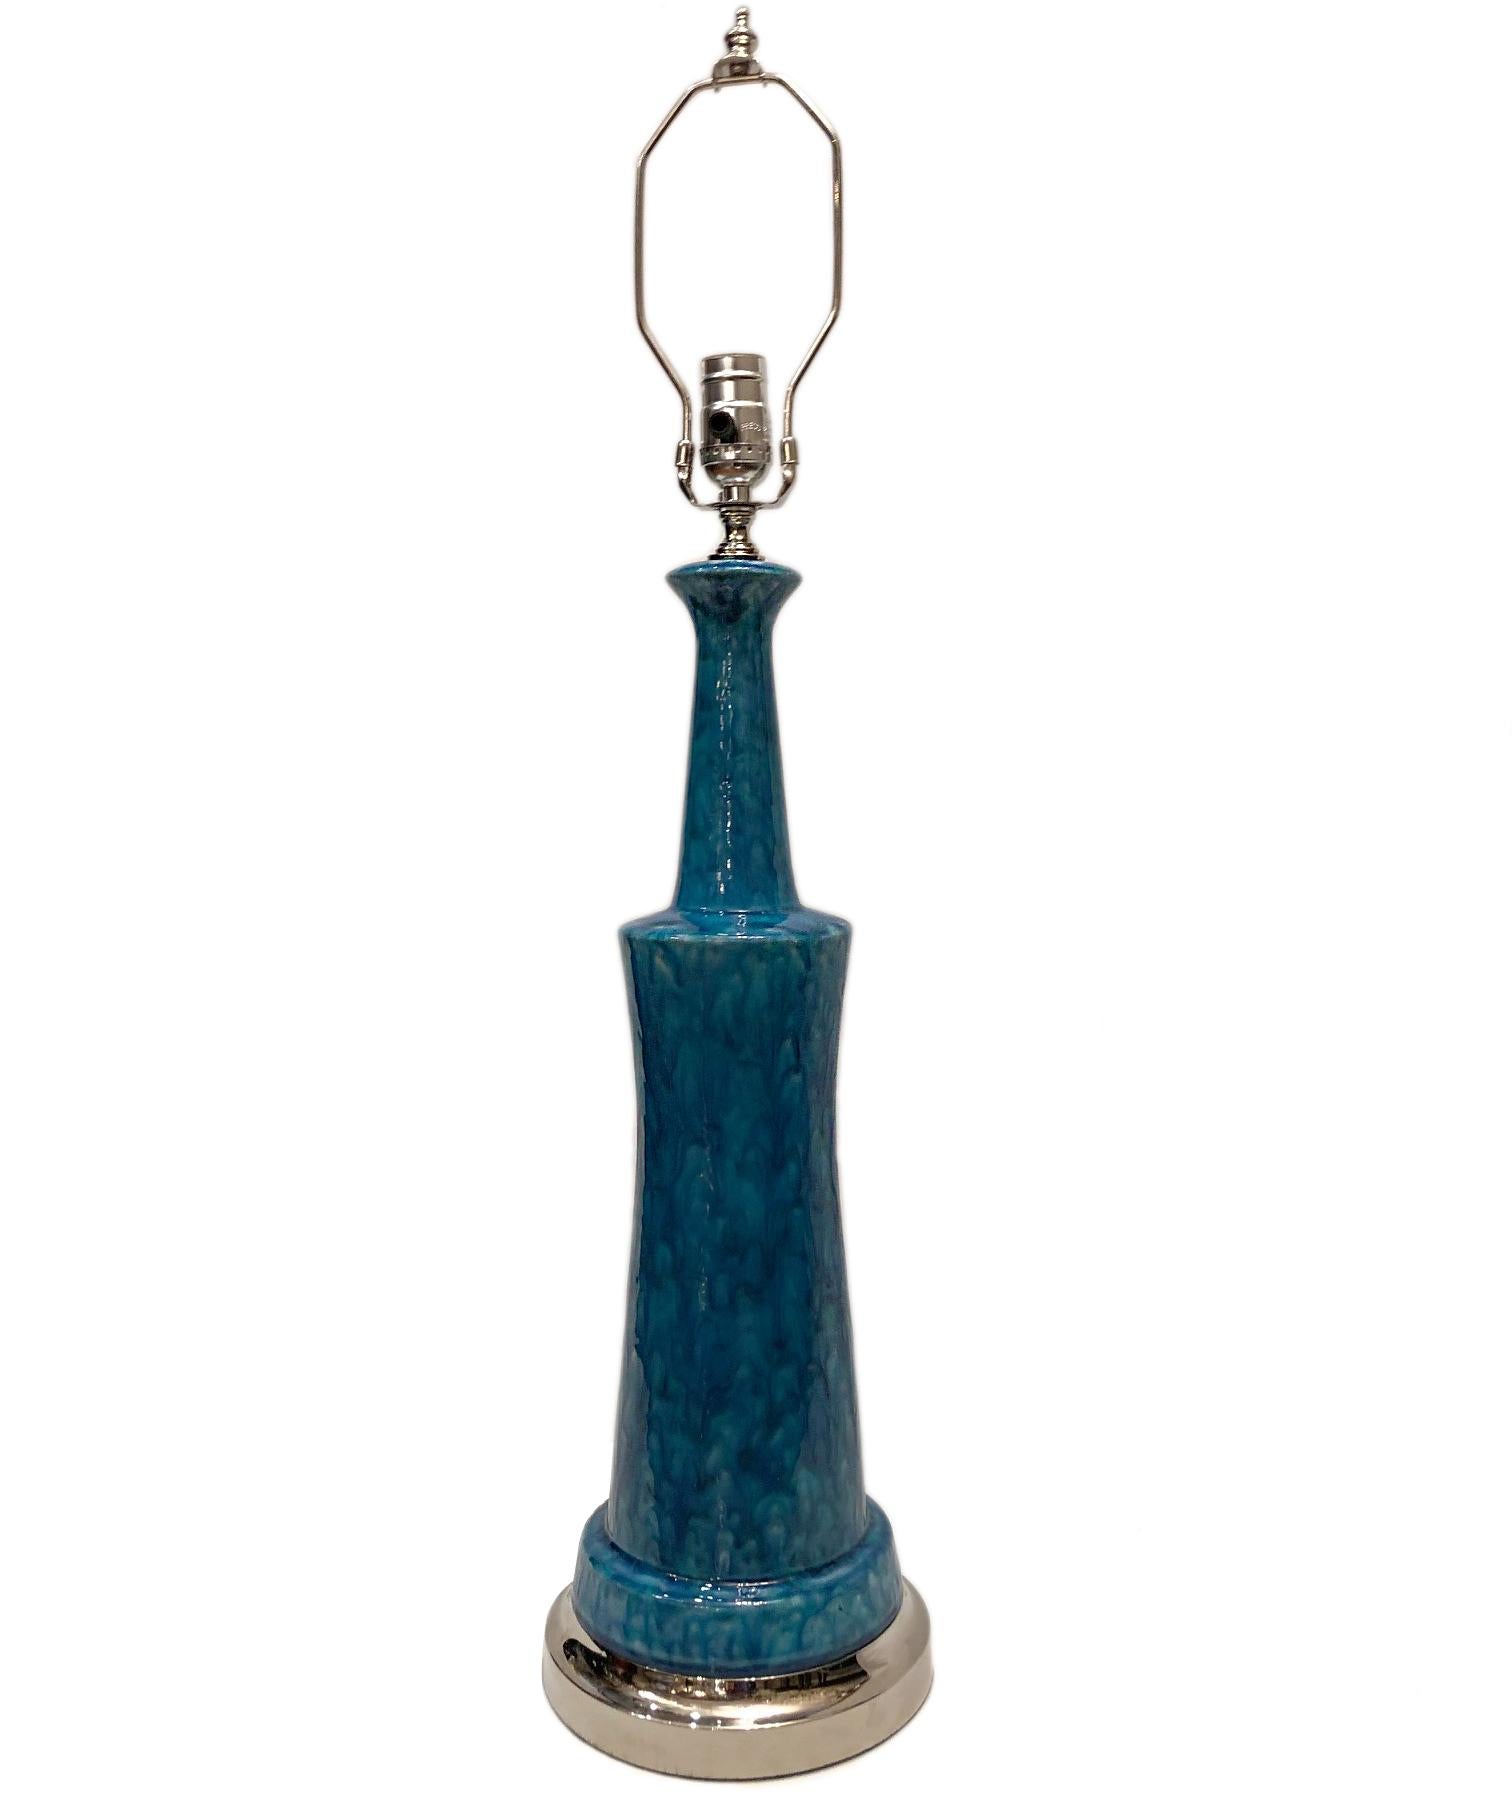 Eine italienische Tischlampe aus blau glasiertem Porzellan mit versilbertem Sockel, um 1960.

Abmessungen:
Höhe des Körpers 22,5